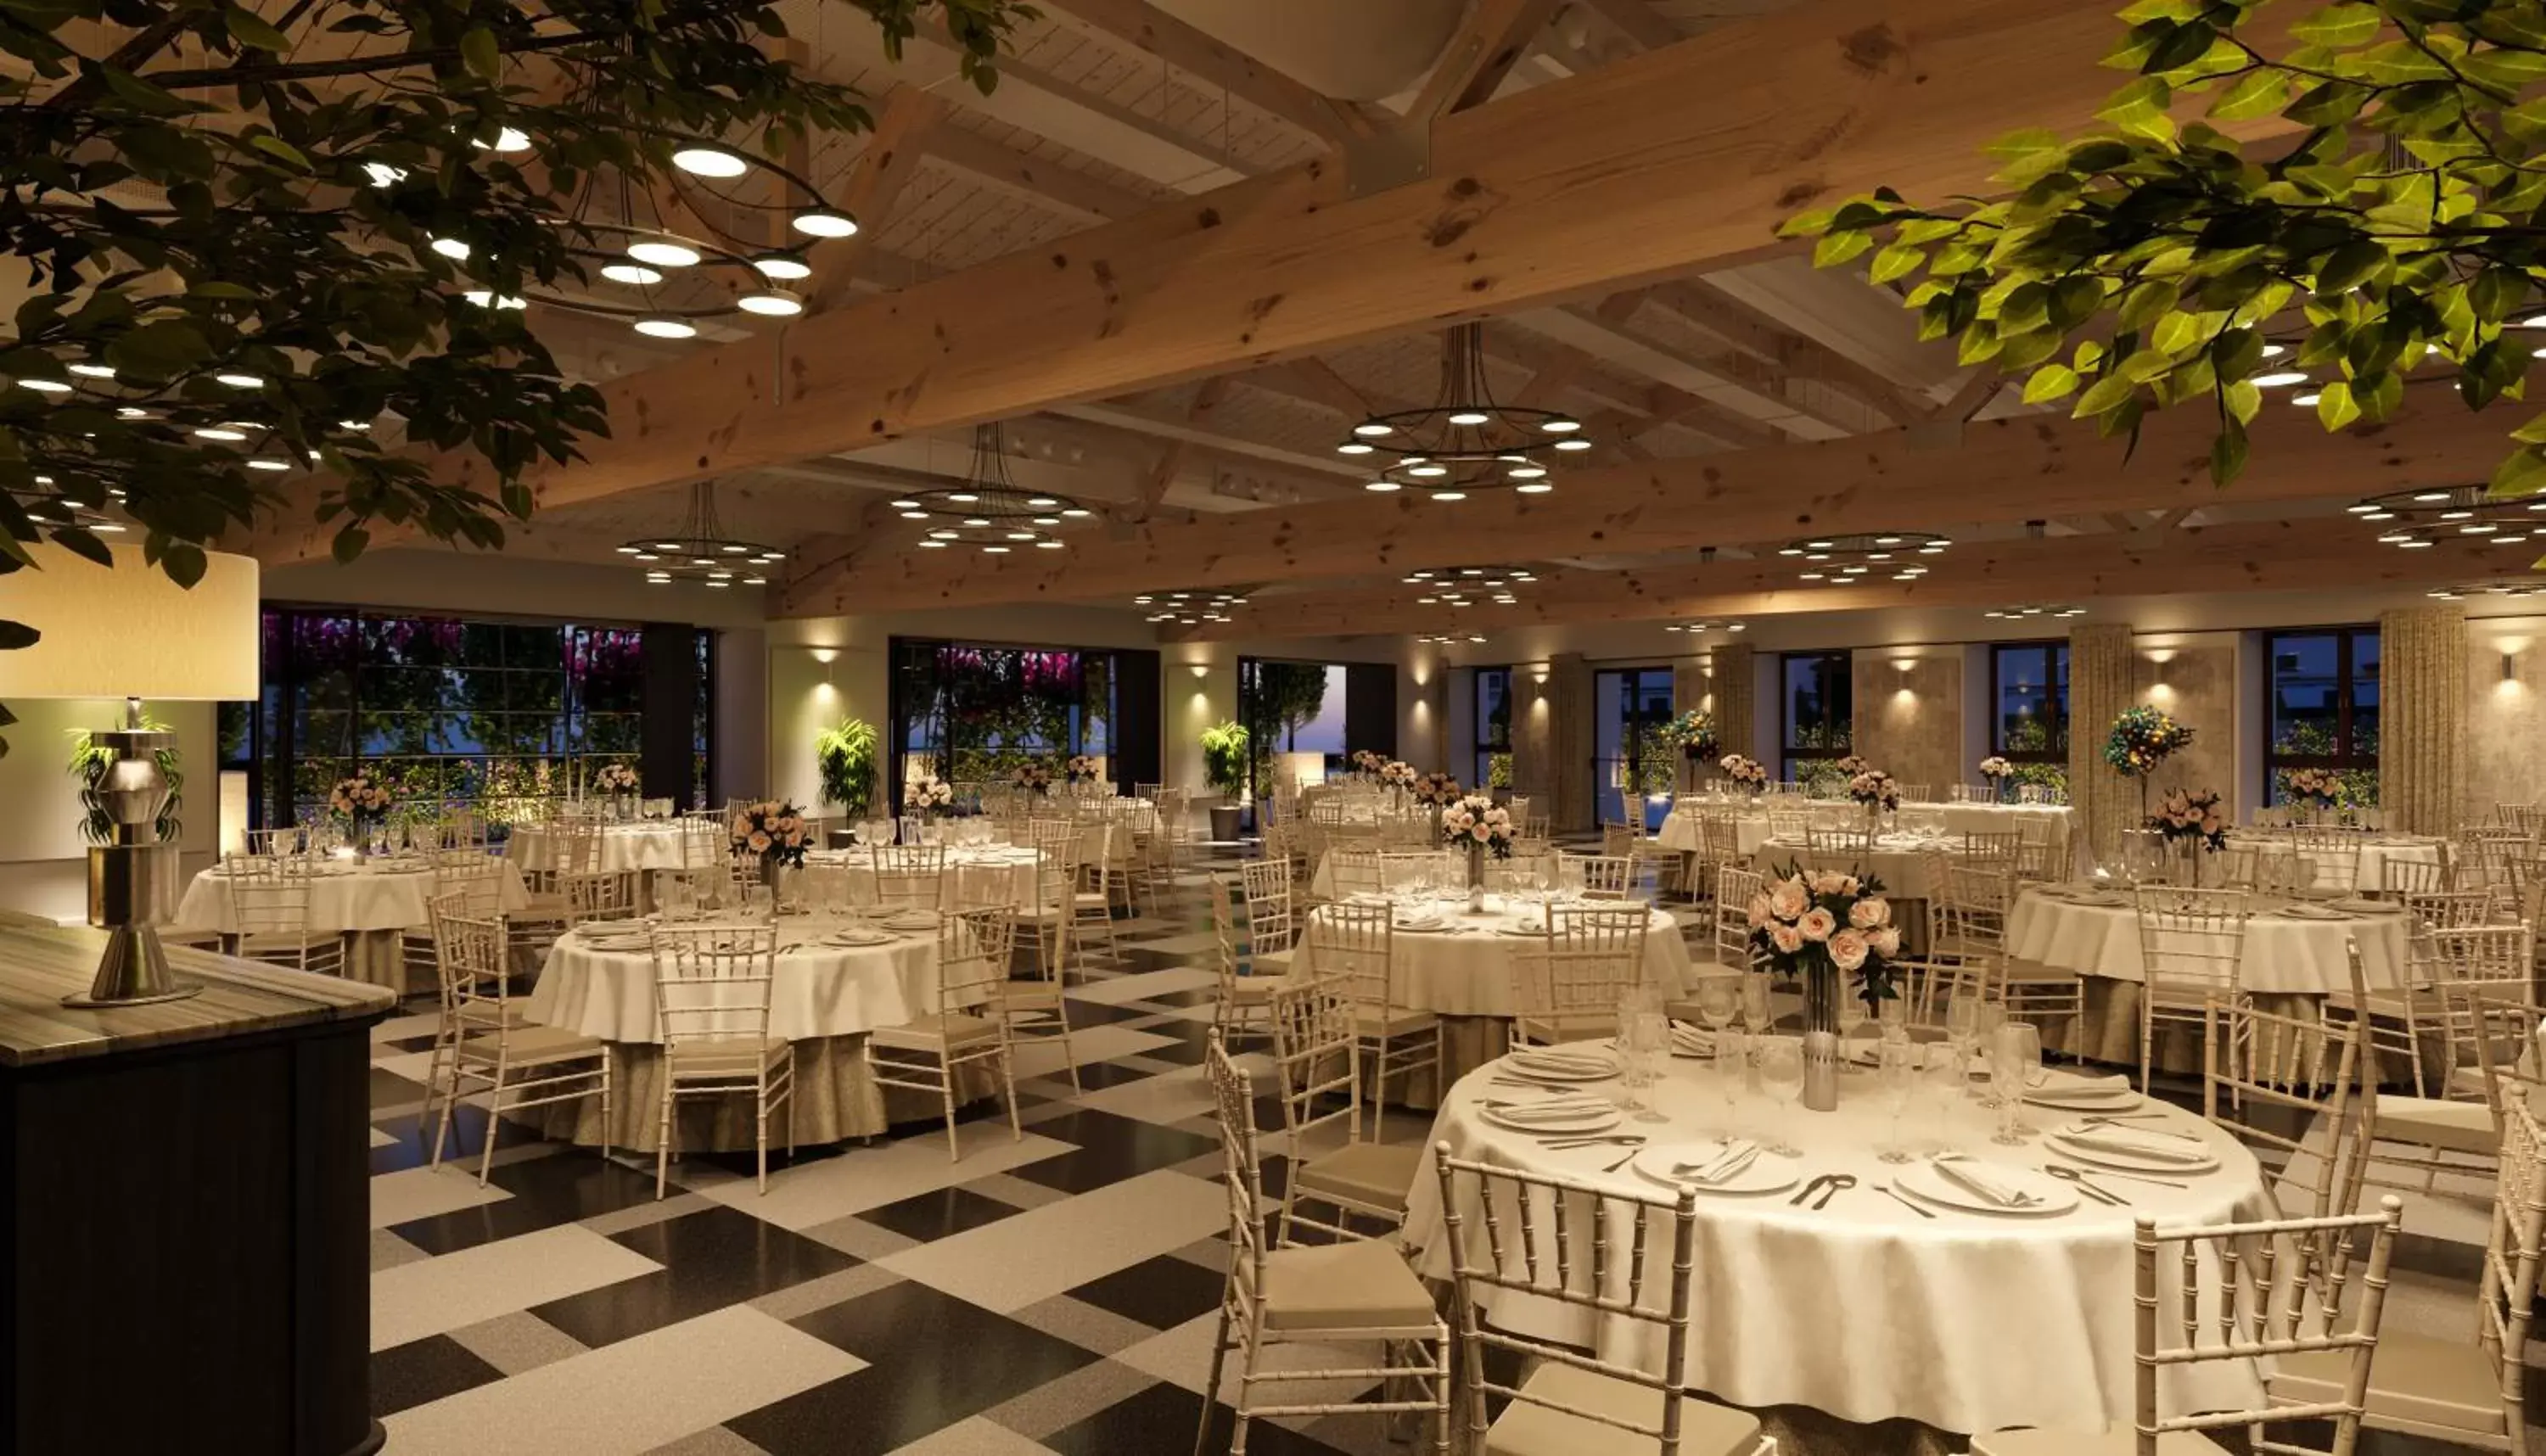 Banquet/Function facilities, Restaurant/Places to Eat in Hospes Palacio de Arenales & Spa